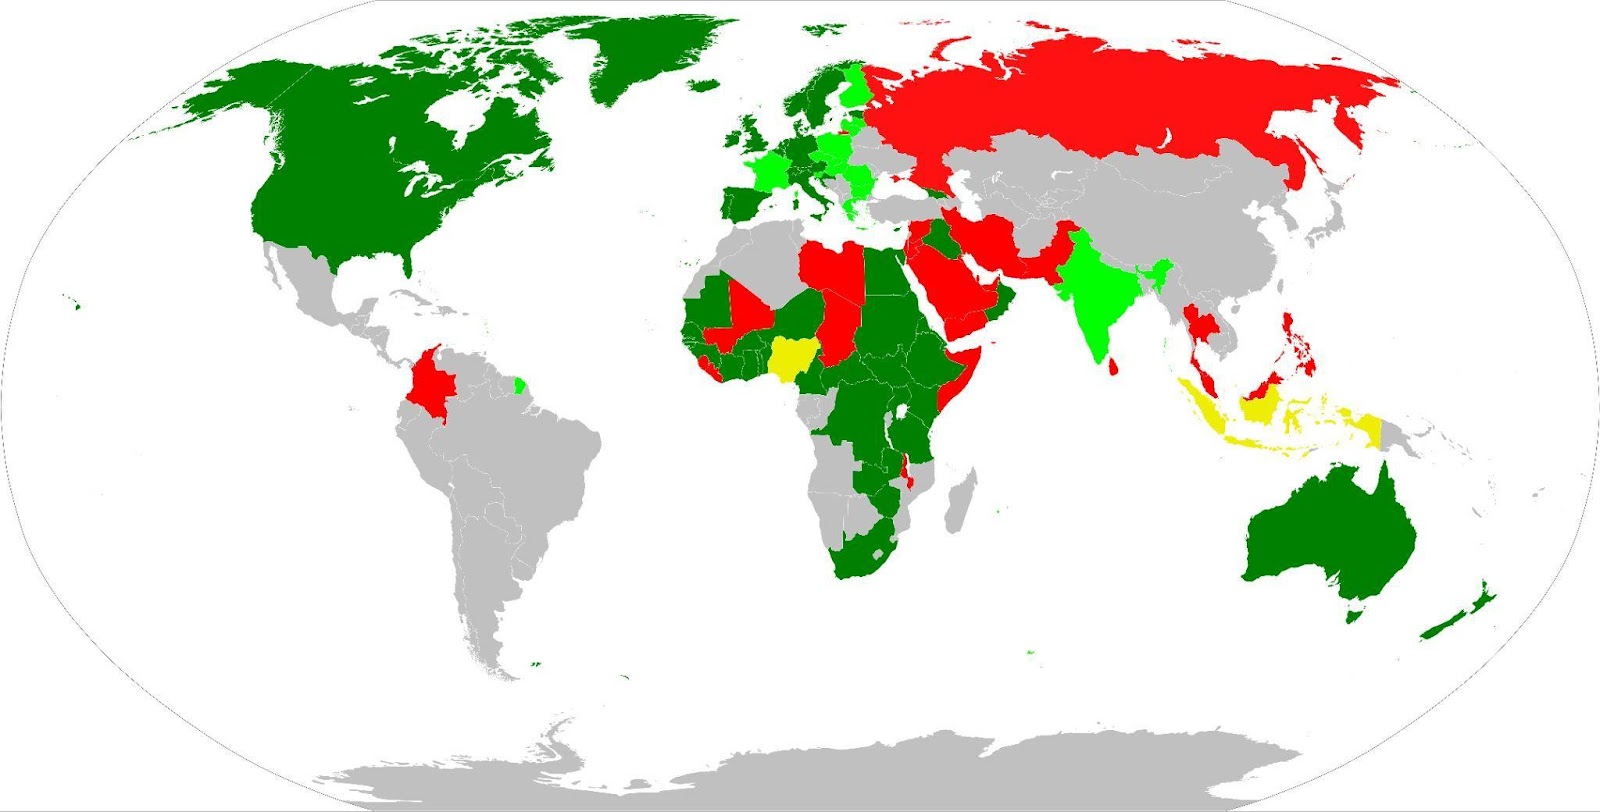 mutilazioni genitali femminili - mappa mondiale delle zone in cui è reato o meno